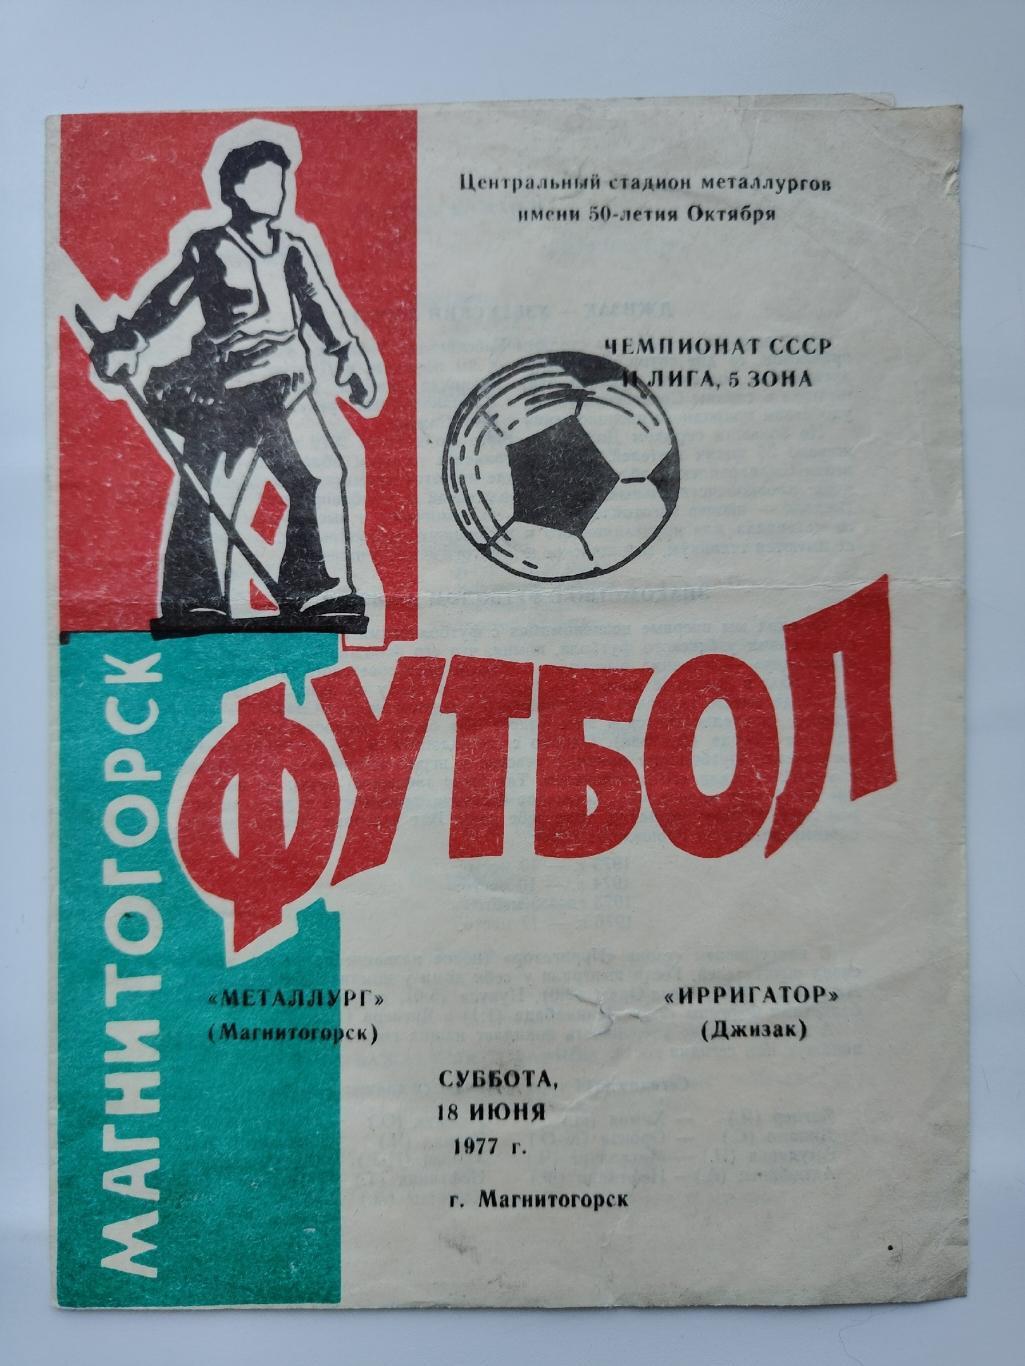 Металлург Магнитогорск - Ирригатор Джизак 1977